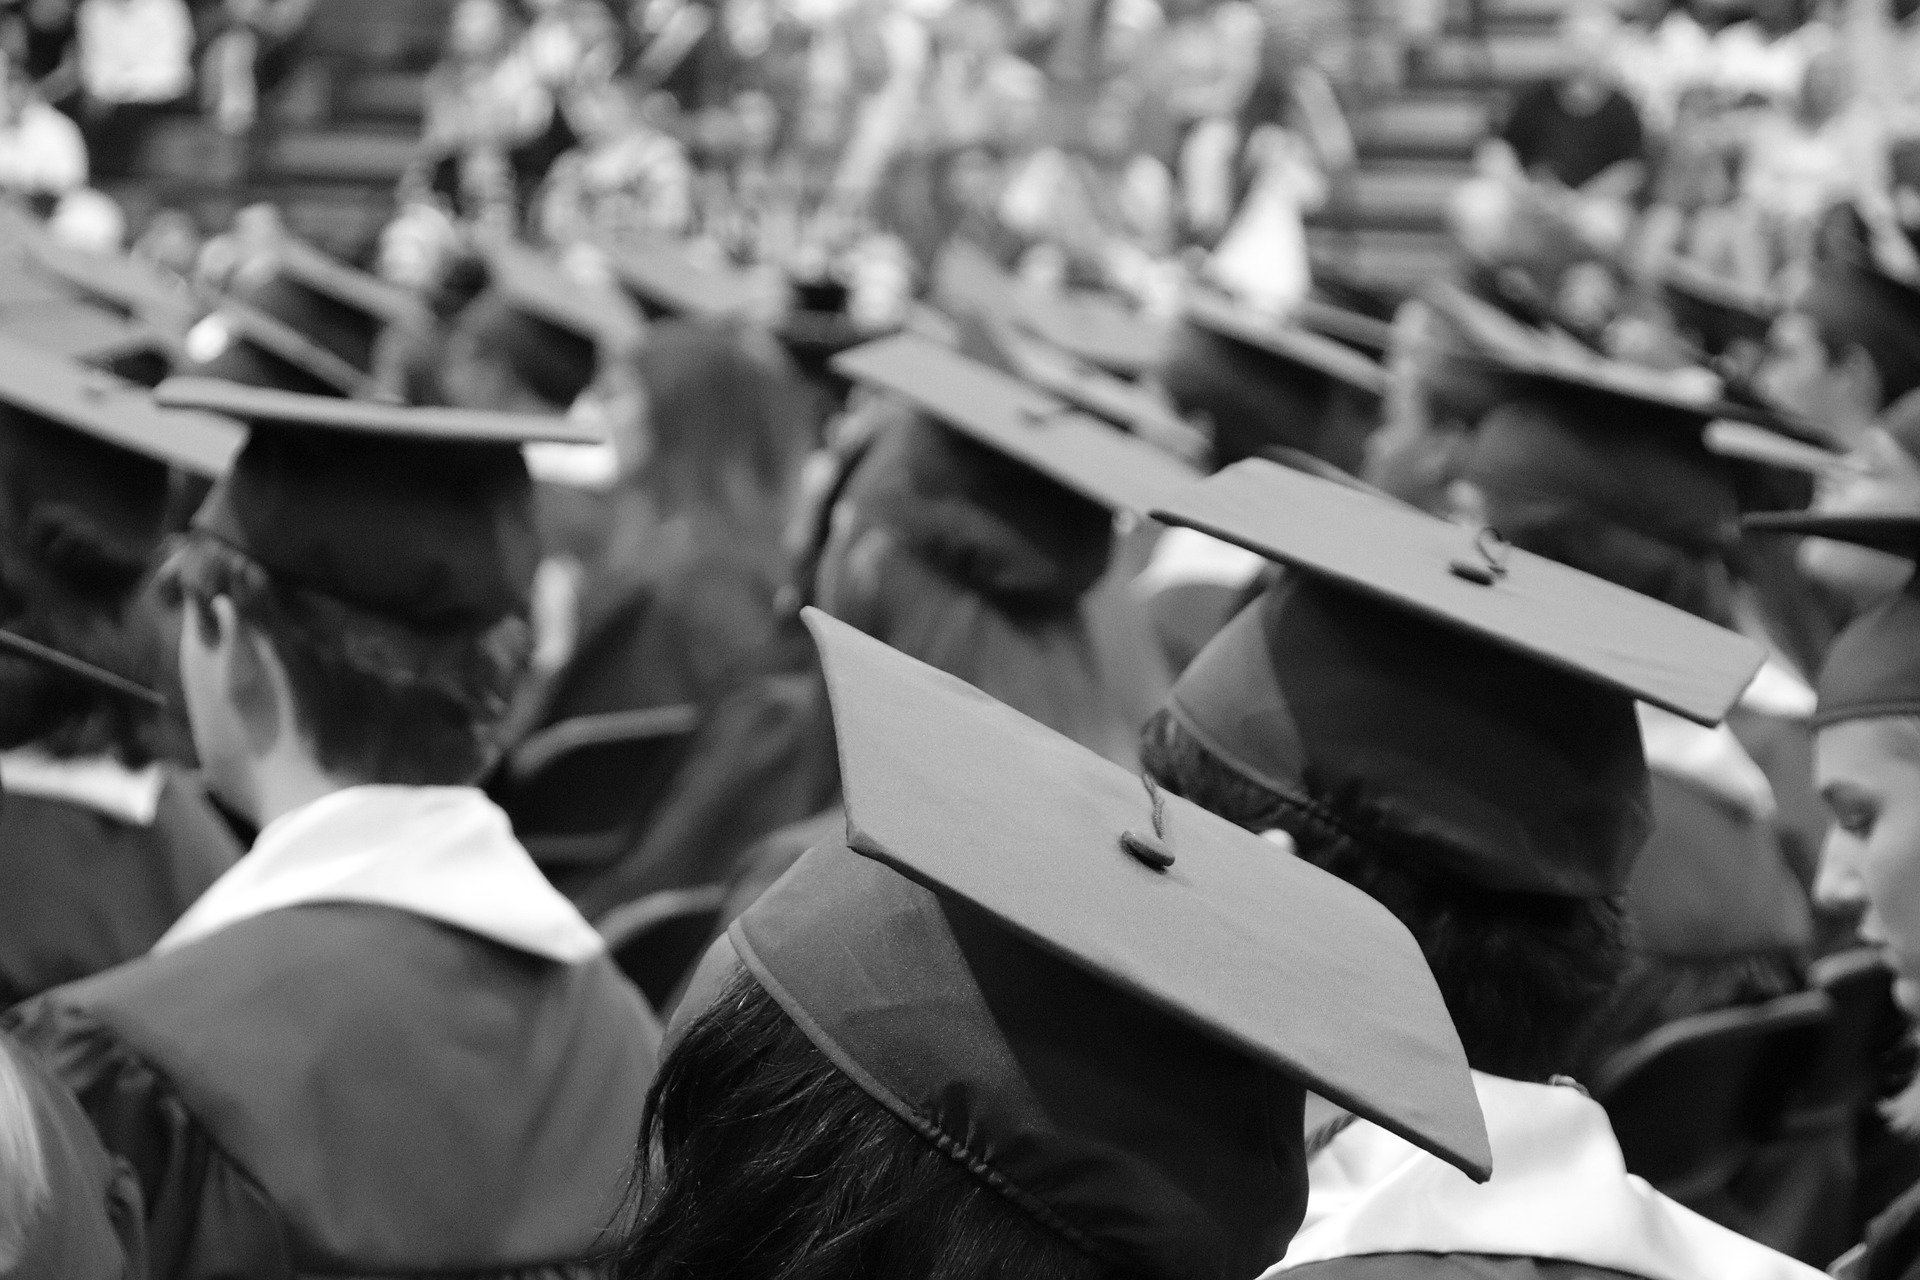 Etudiants vus de dos photographiés en noir et blanc à une cérémonie de remise de diplôme